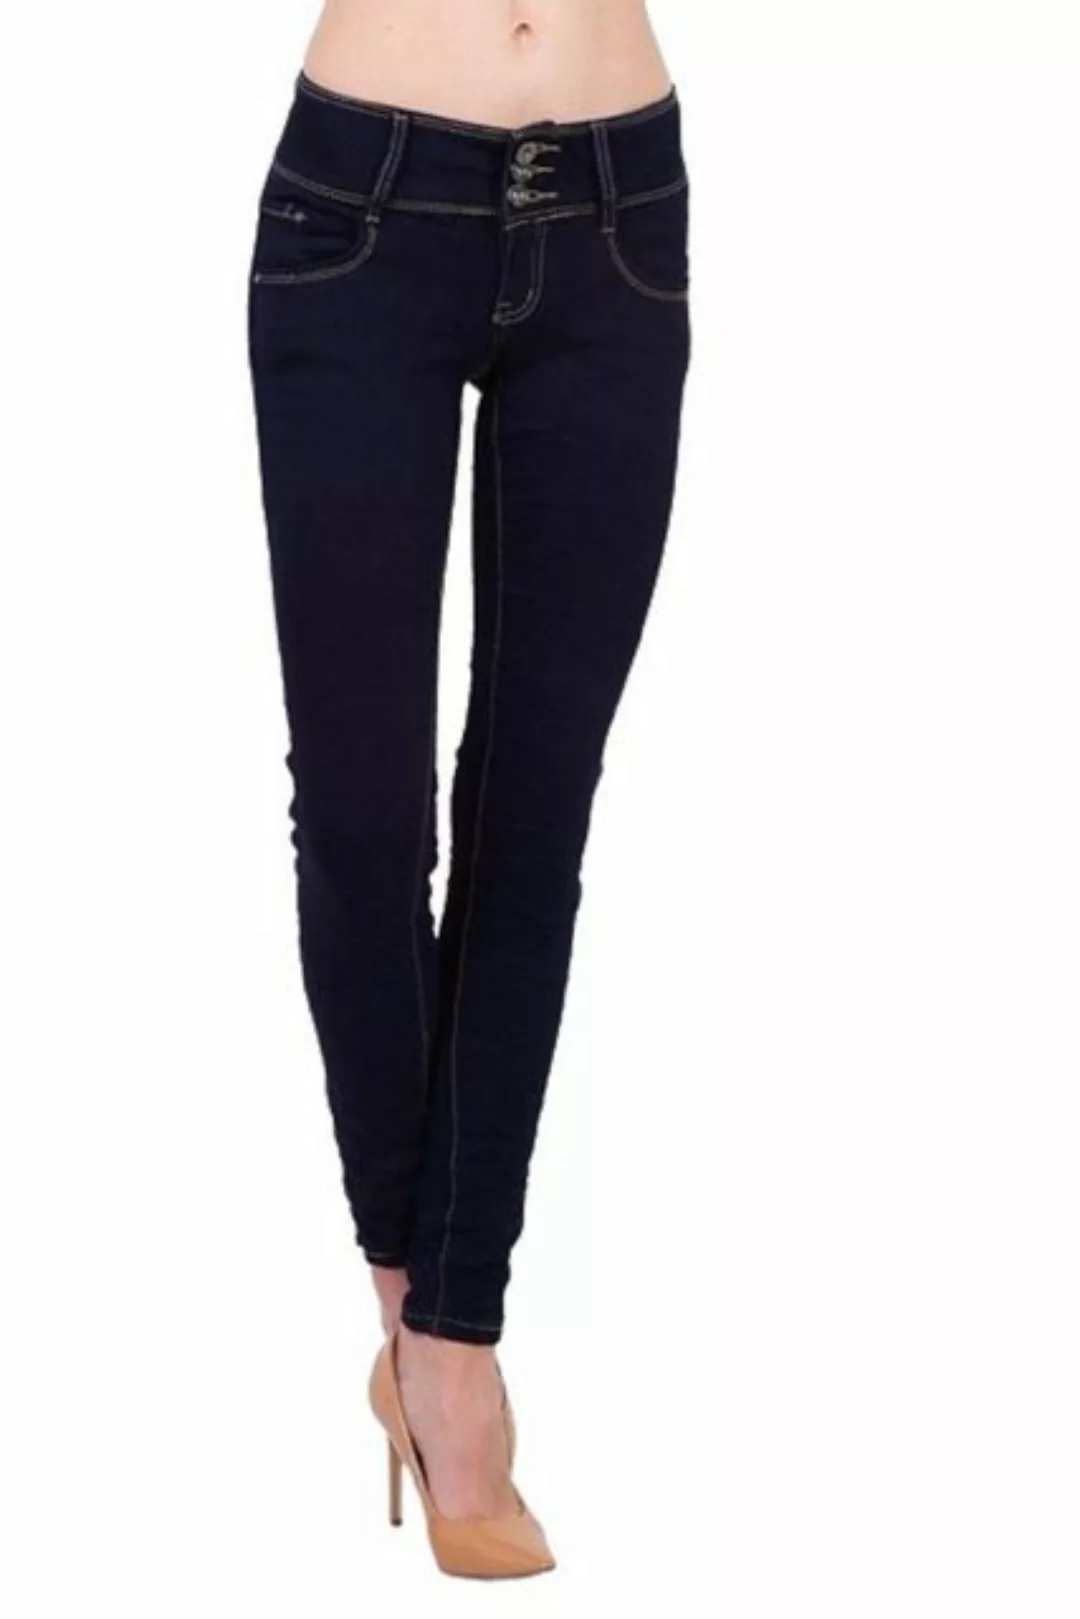 BENK Röhrenjeans Damen Hüft Jeans Hose Röhrenjeans Skinny Slim Fit Stretch günstig online kaufen